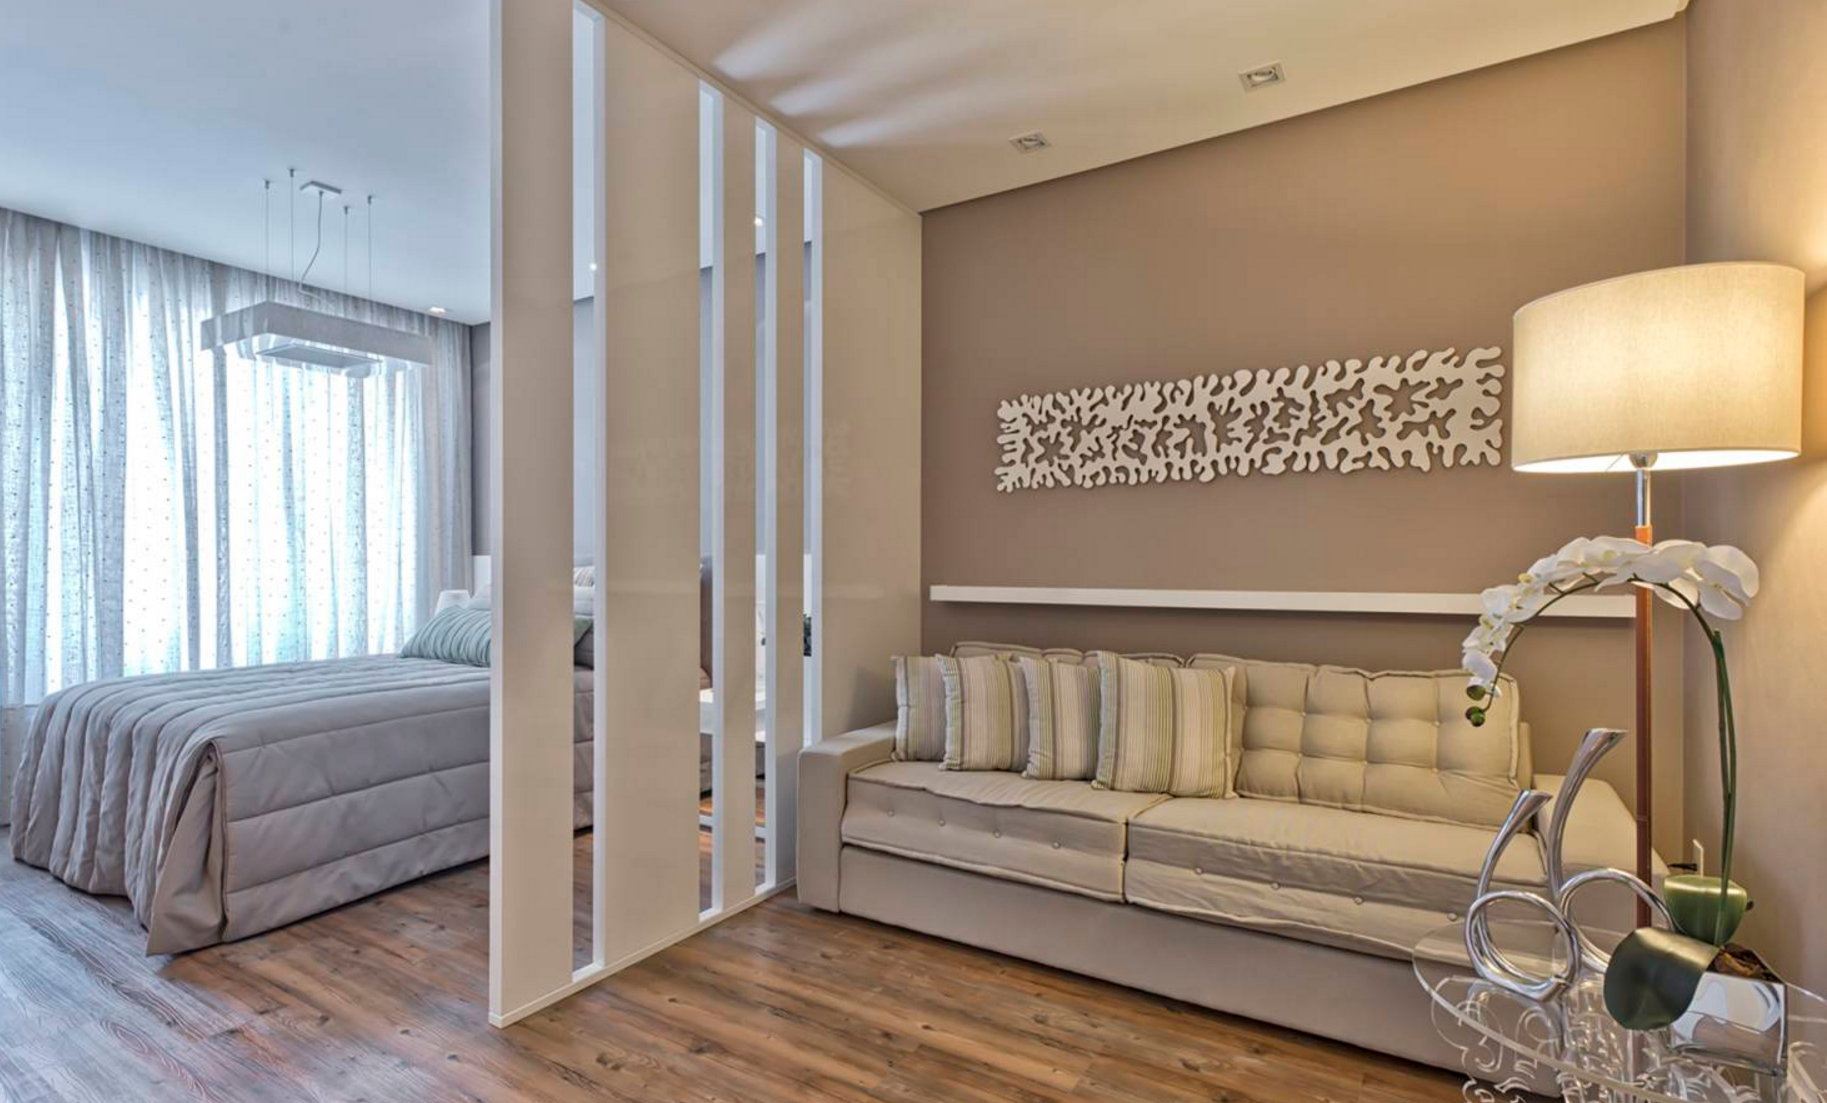 Перегородки для зонирования пространства в комнате: декоративные раздвижные, деревянные и стеклянные, шкаф и ширма, фото